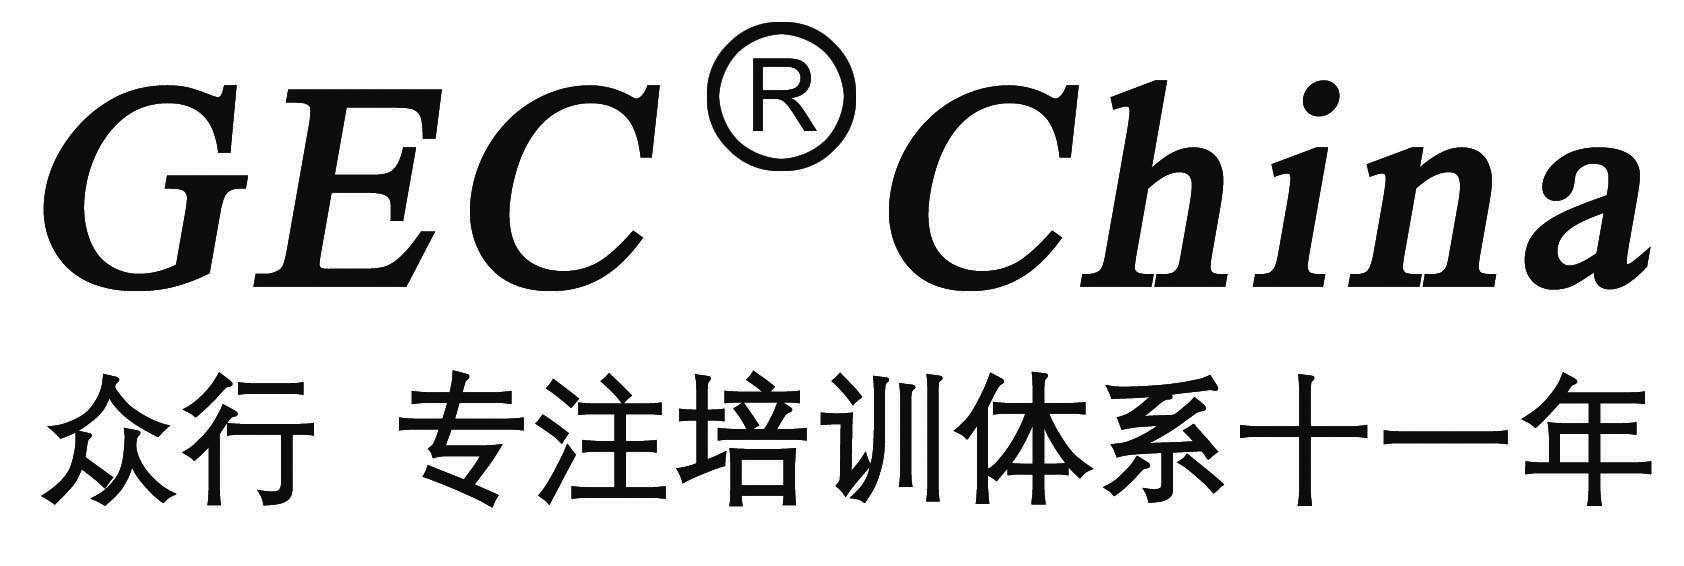 广东众行管理顾问有限公司北京分公司logo